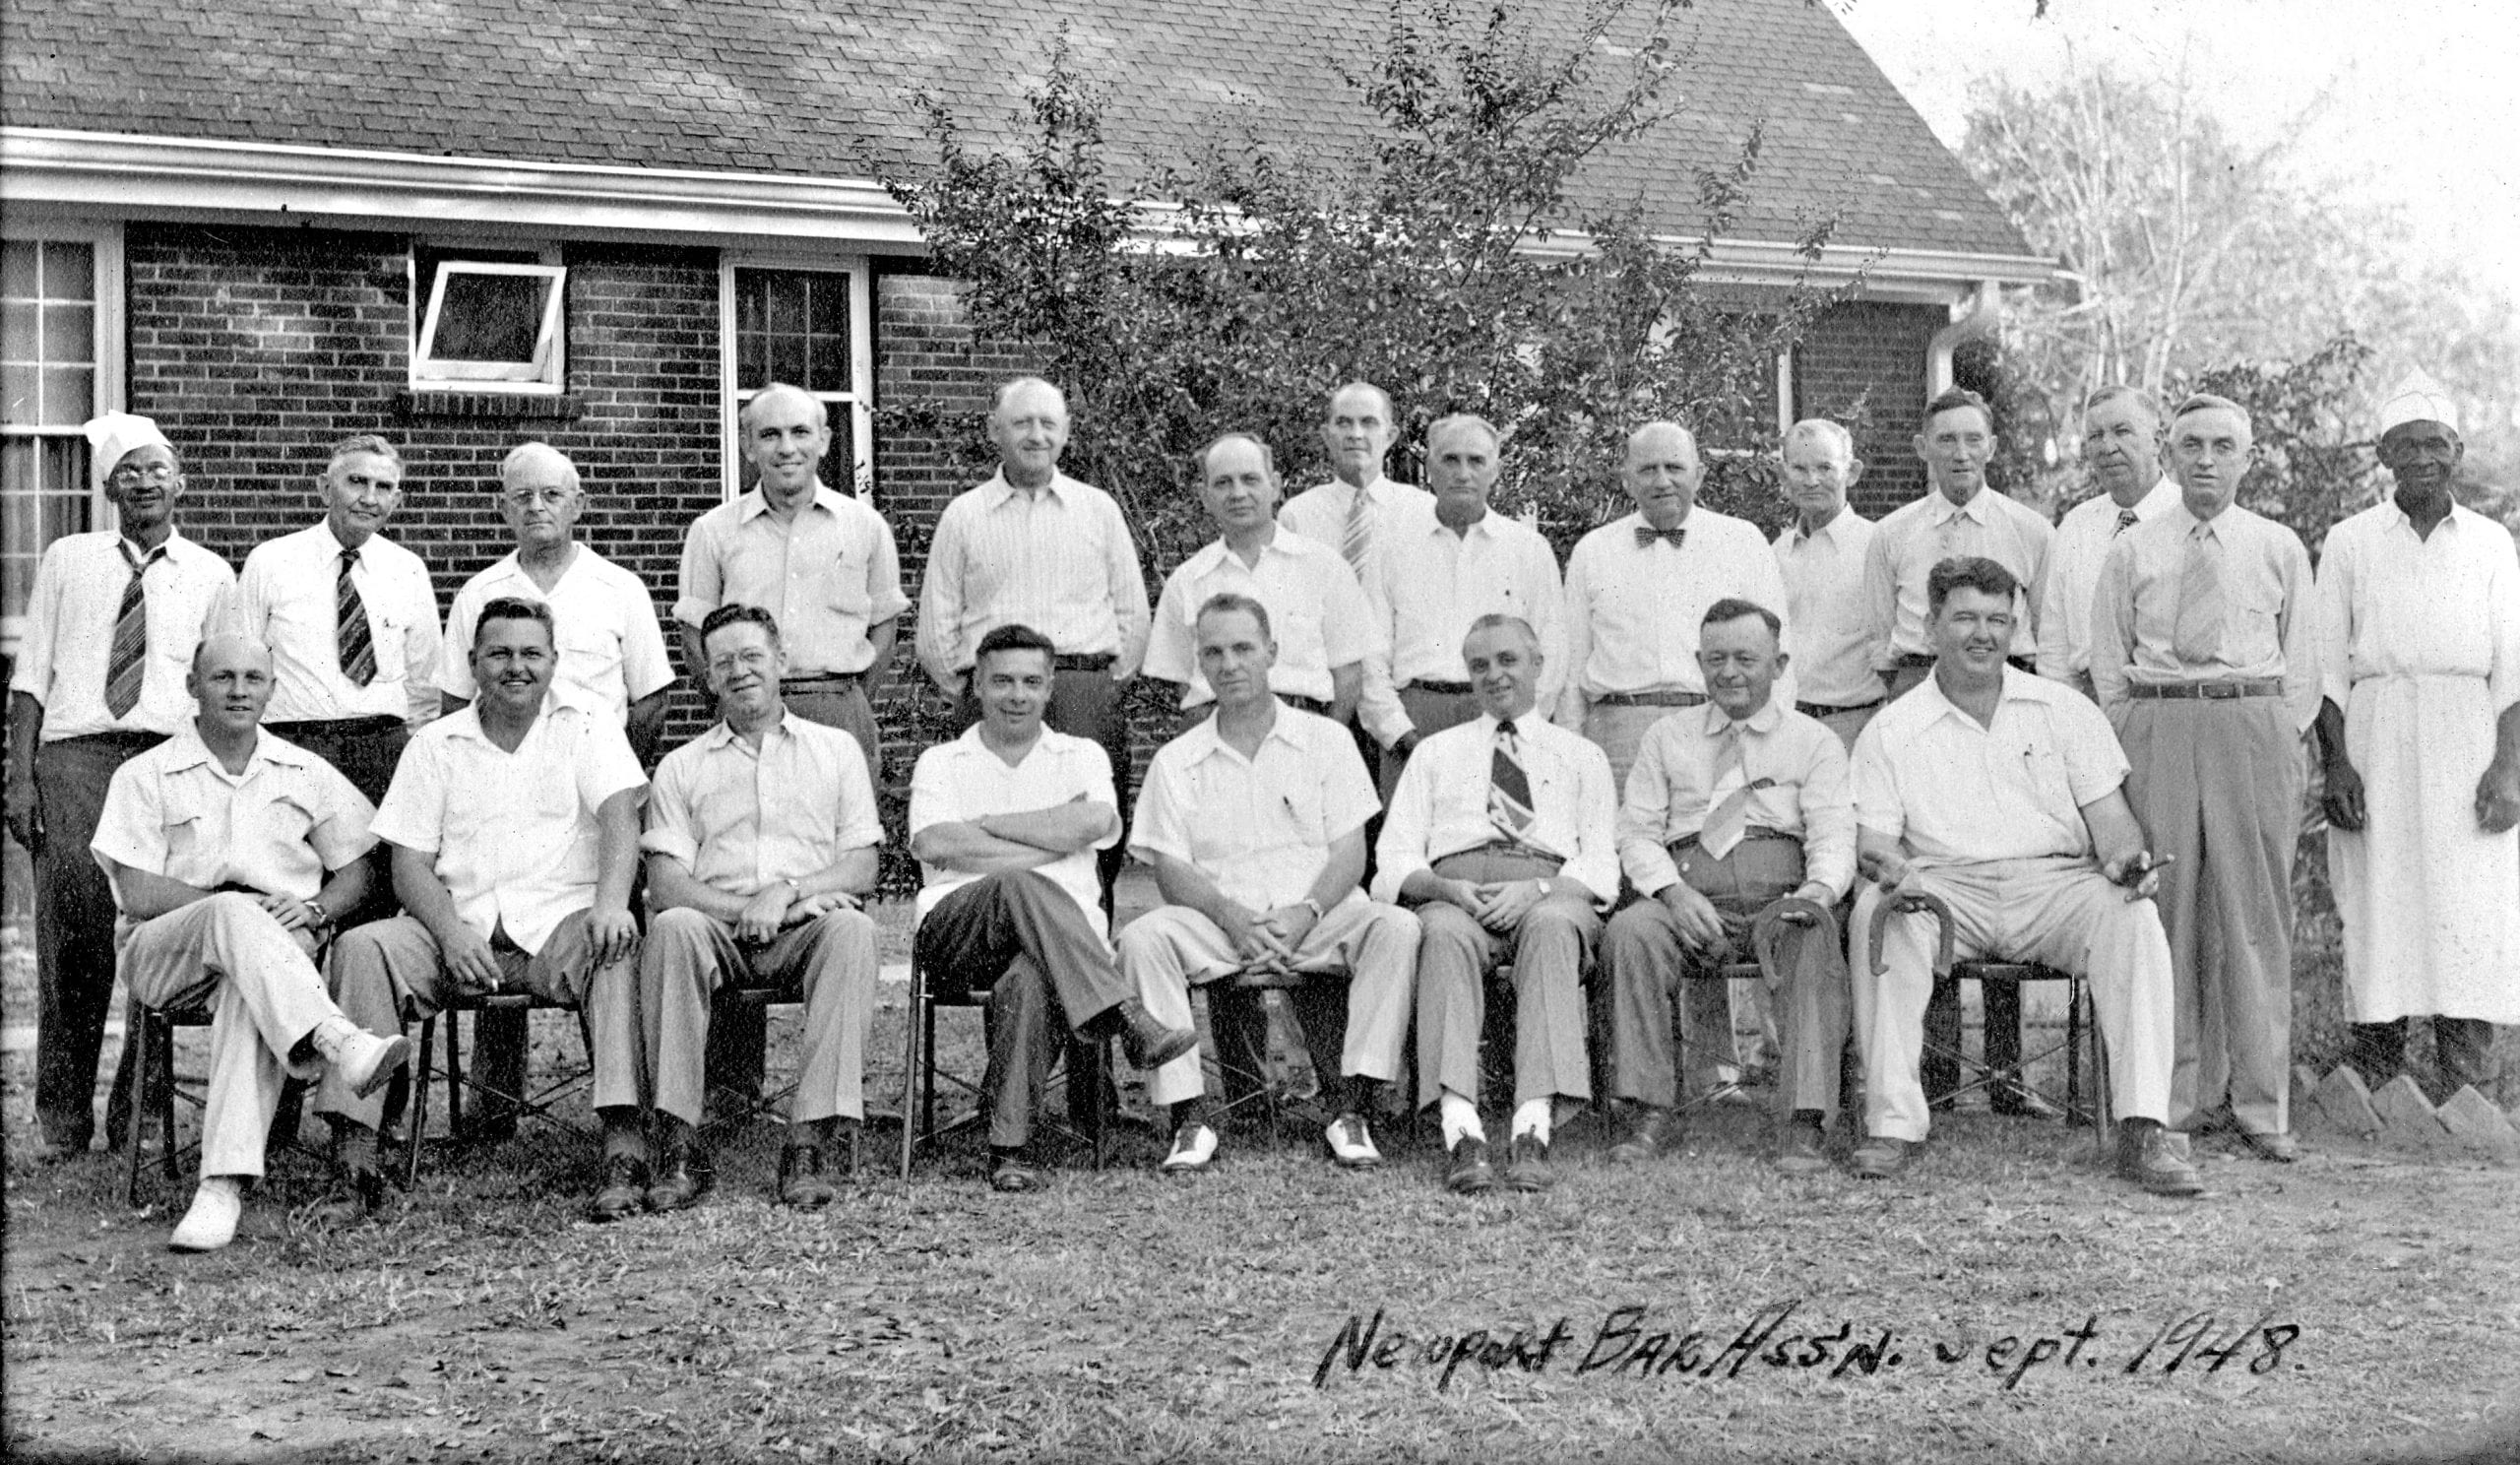 1948 – Newport Bar Association